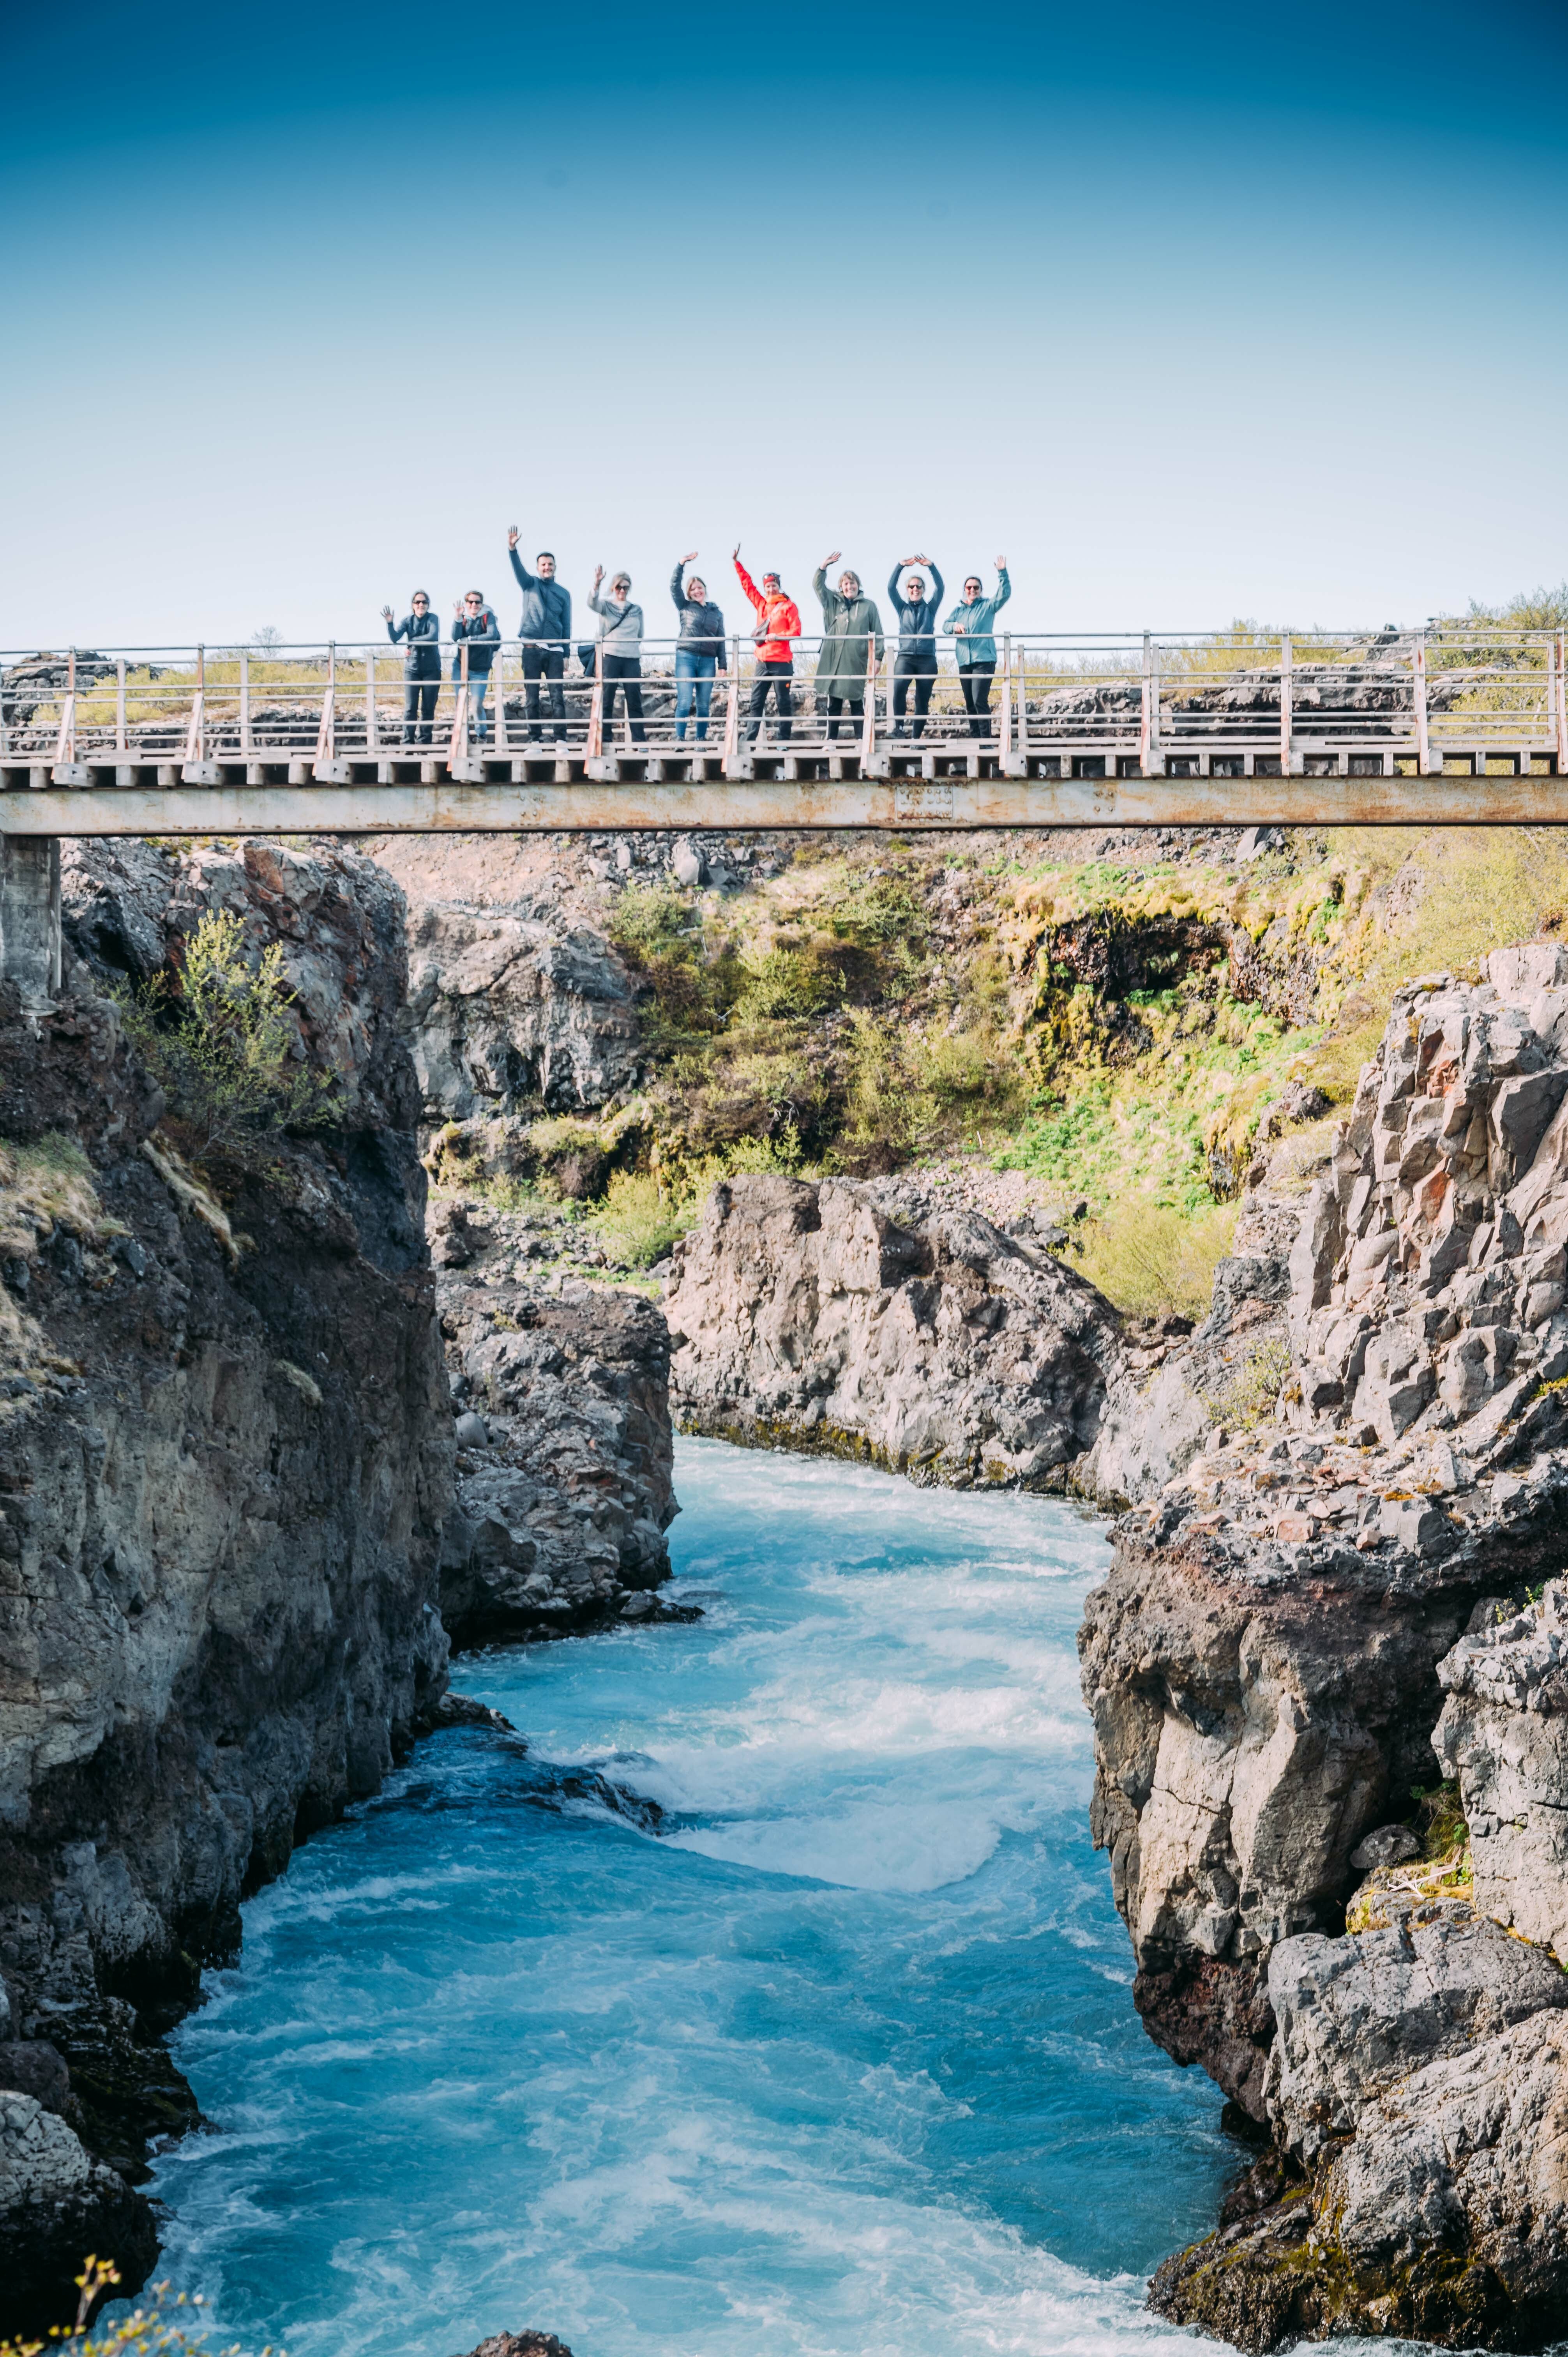 Katla Team beim Hraunfossar, stehen in der Mitte der Brücke und heben die Hände, unter ihnen ein türkisblauer Fluss.